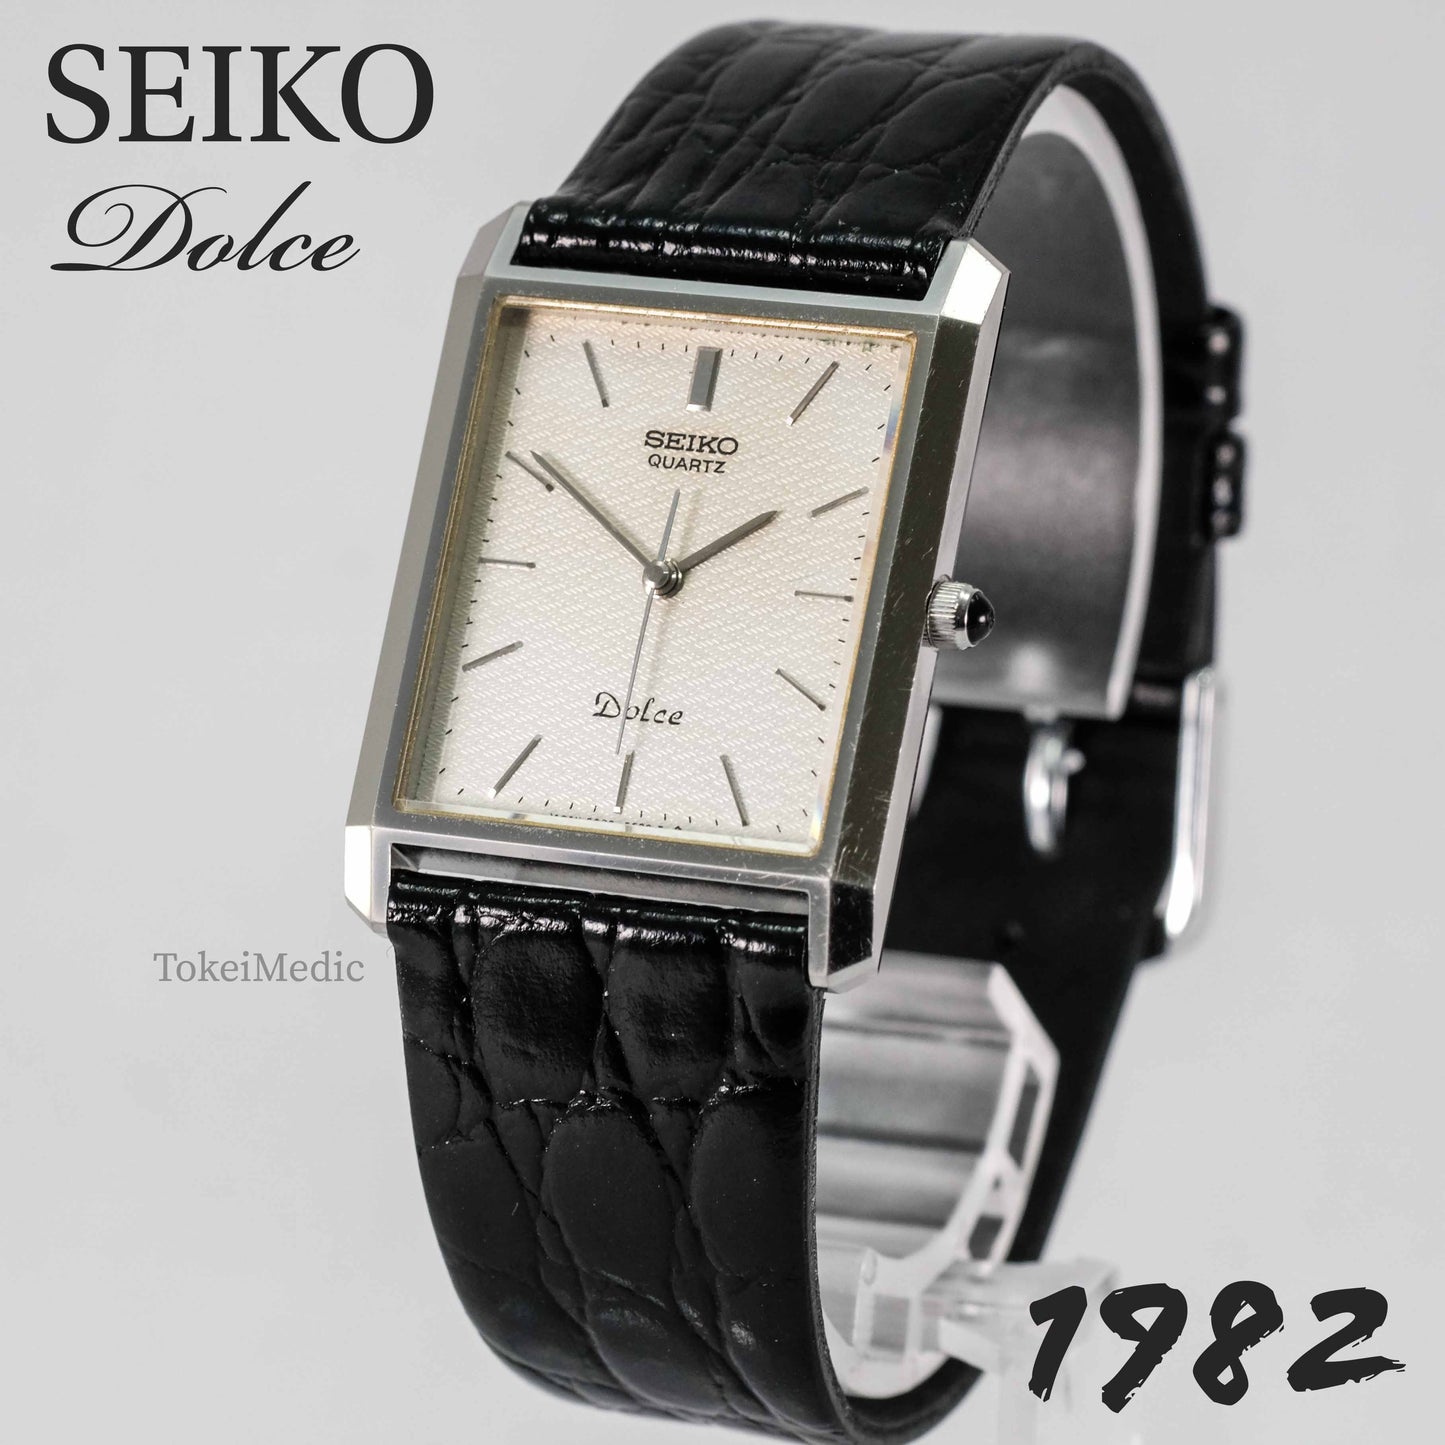 1982 Seiko Dolce 6030-5620